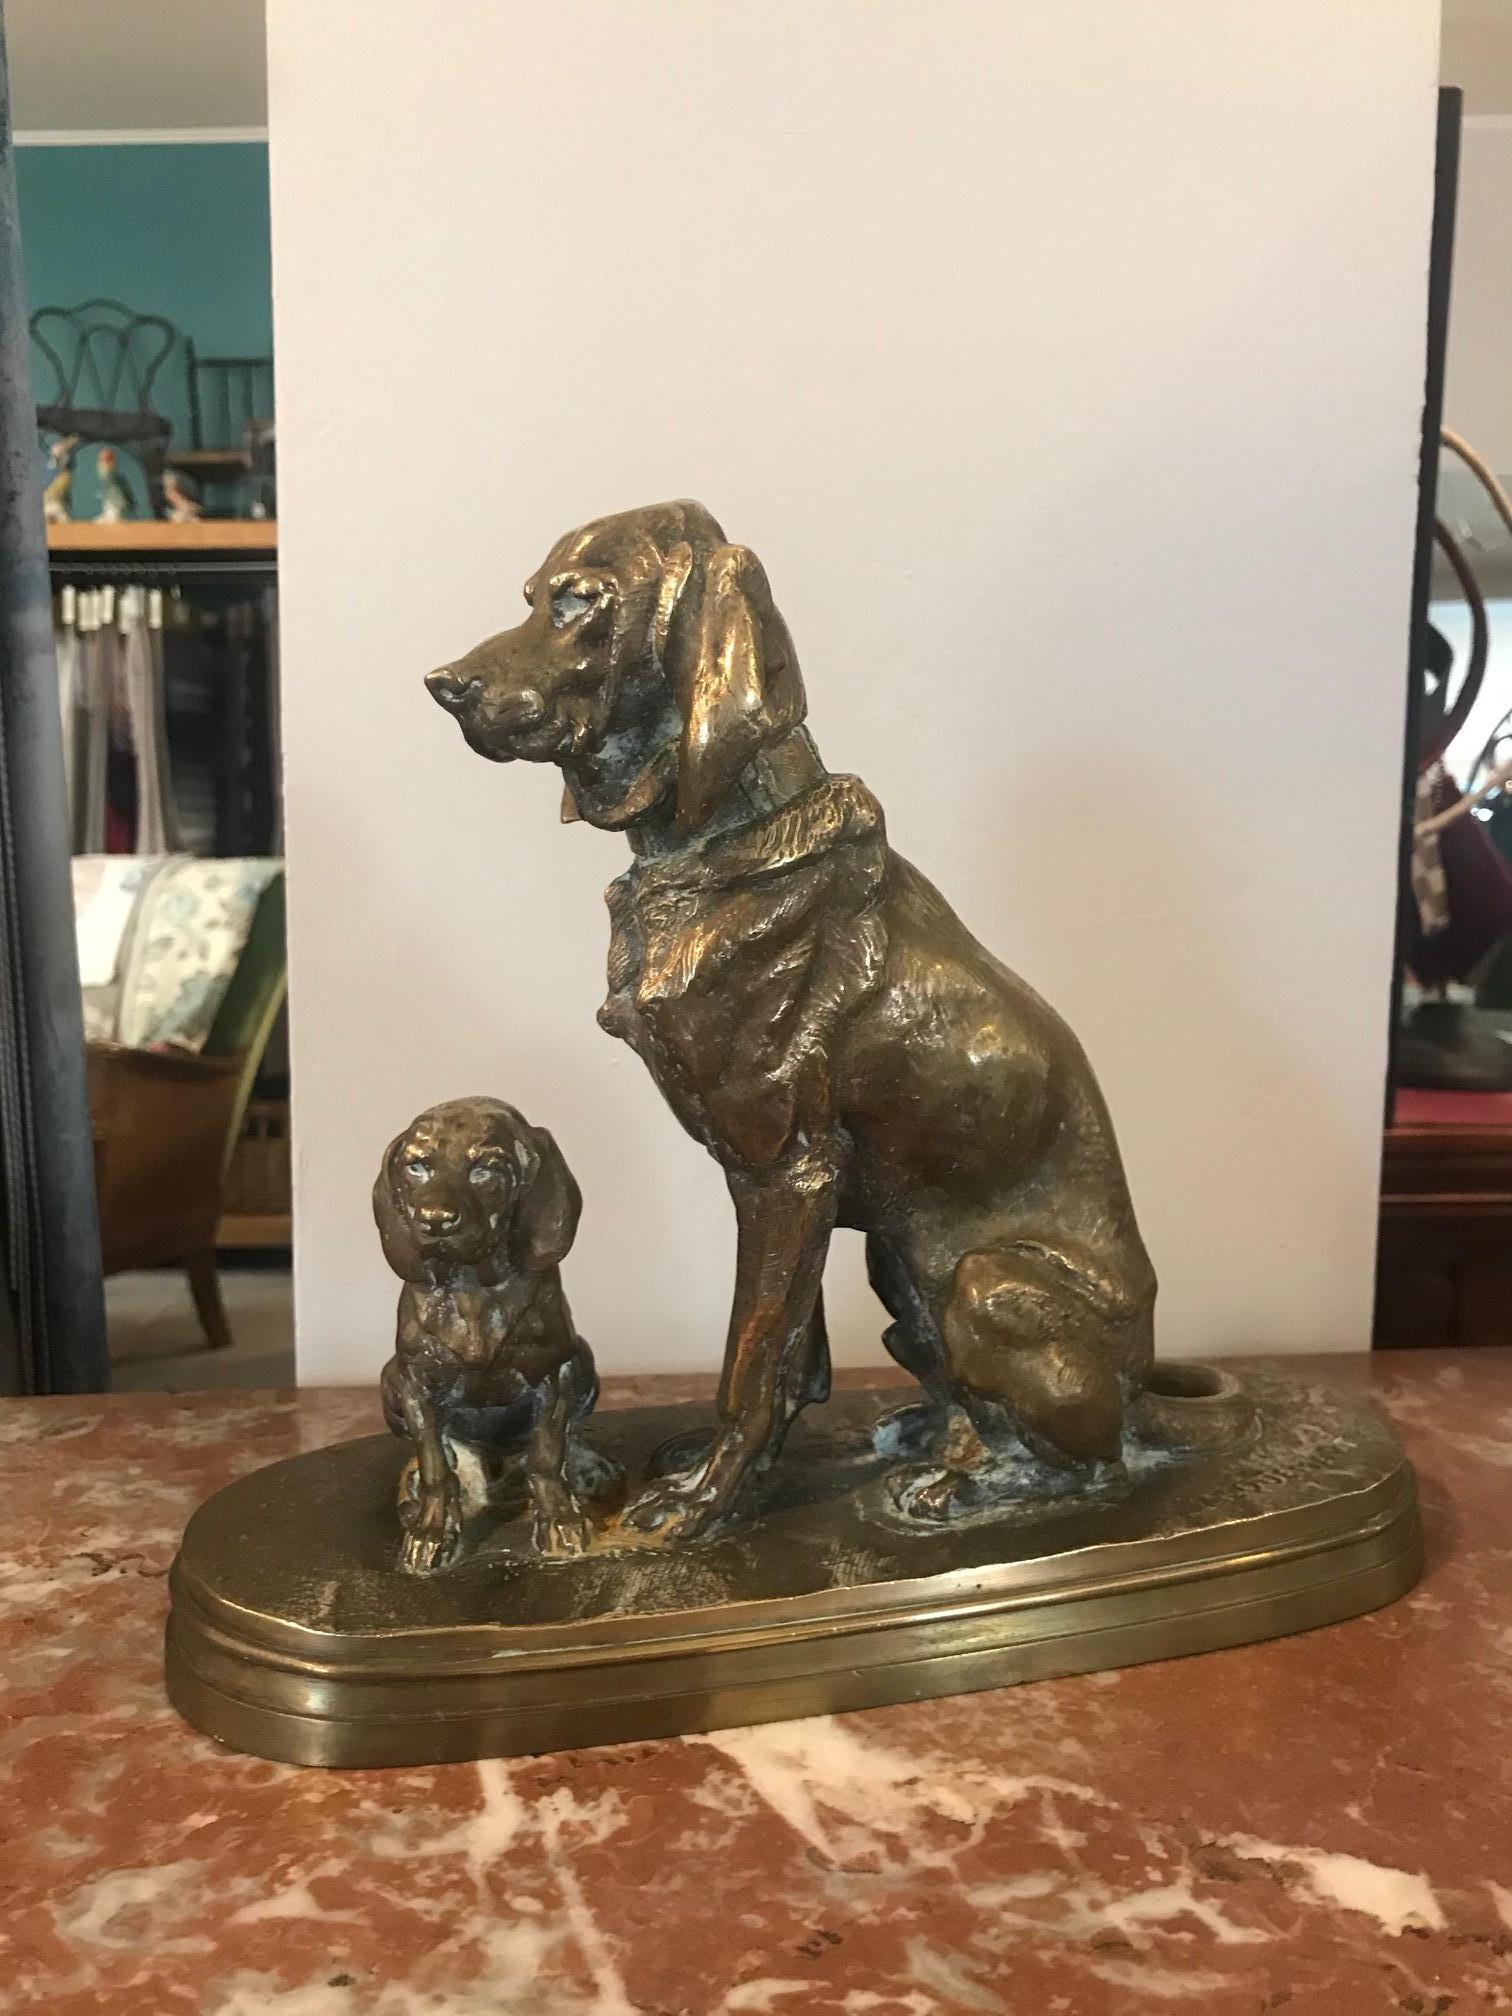 Magnifique groupe assis en bronze d'Alfred Jacquemart (français, 1824-1896) du XIXe siècle représentant un chien et son chiot. Patine dorée. Signé Jacquemart sur la base.